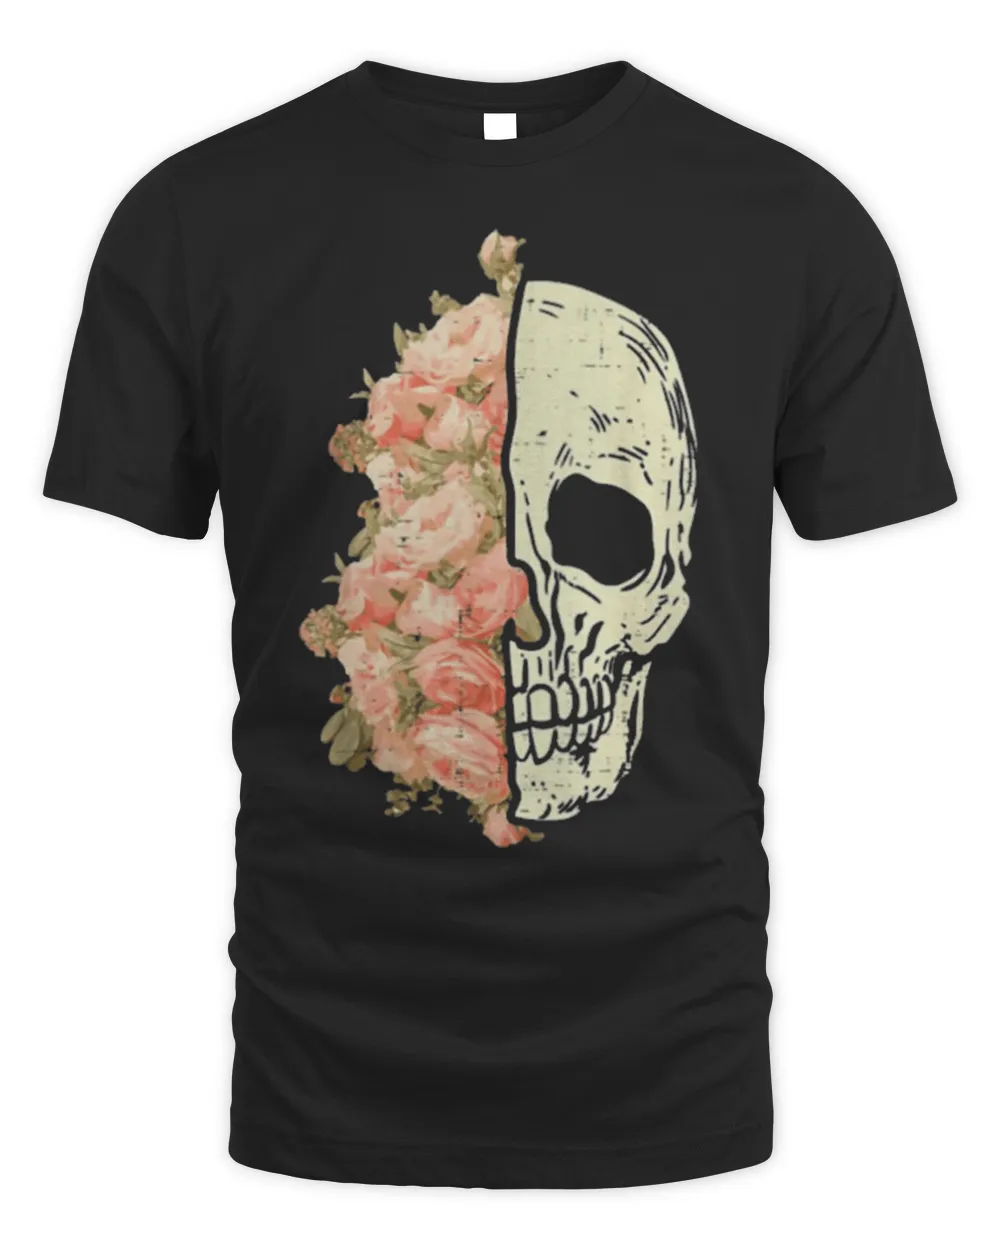 Floral Skull Skeleton Flowers Halloween Costume Shirt